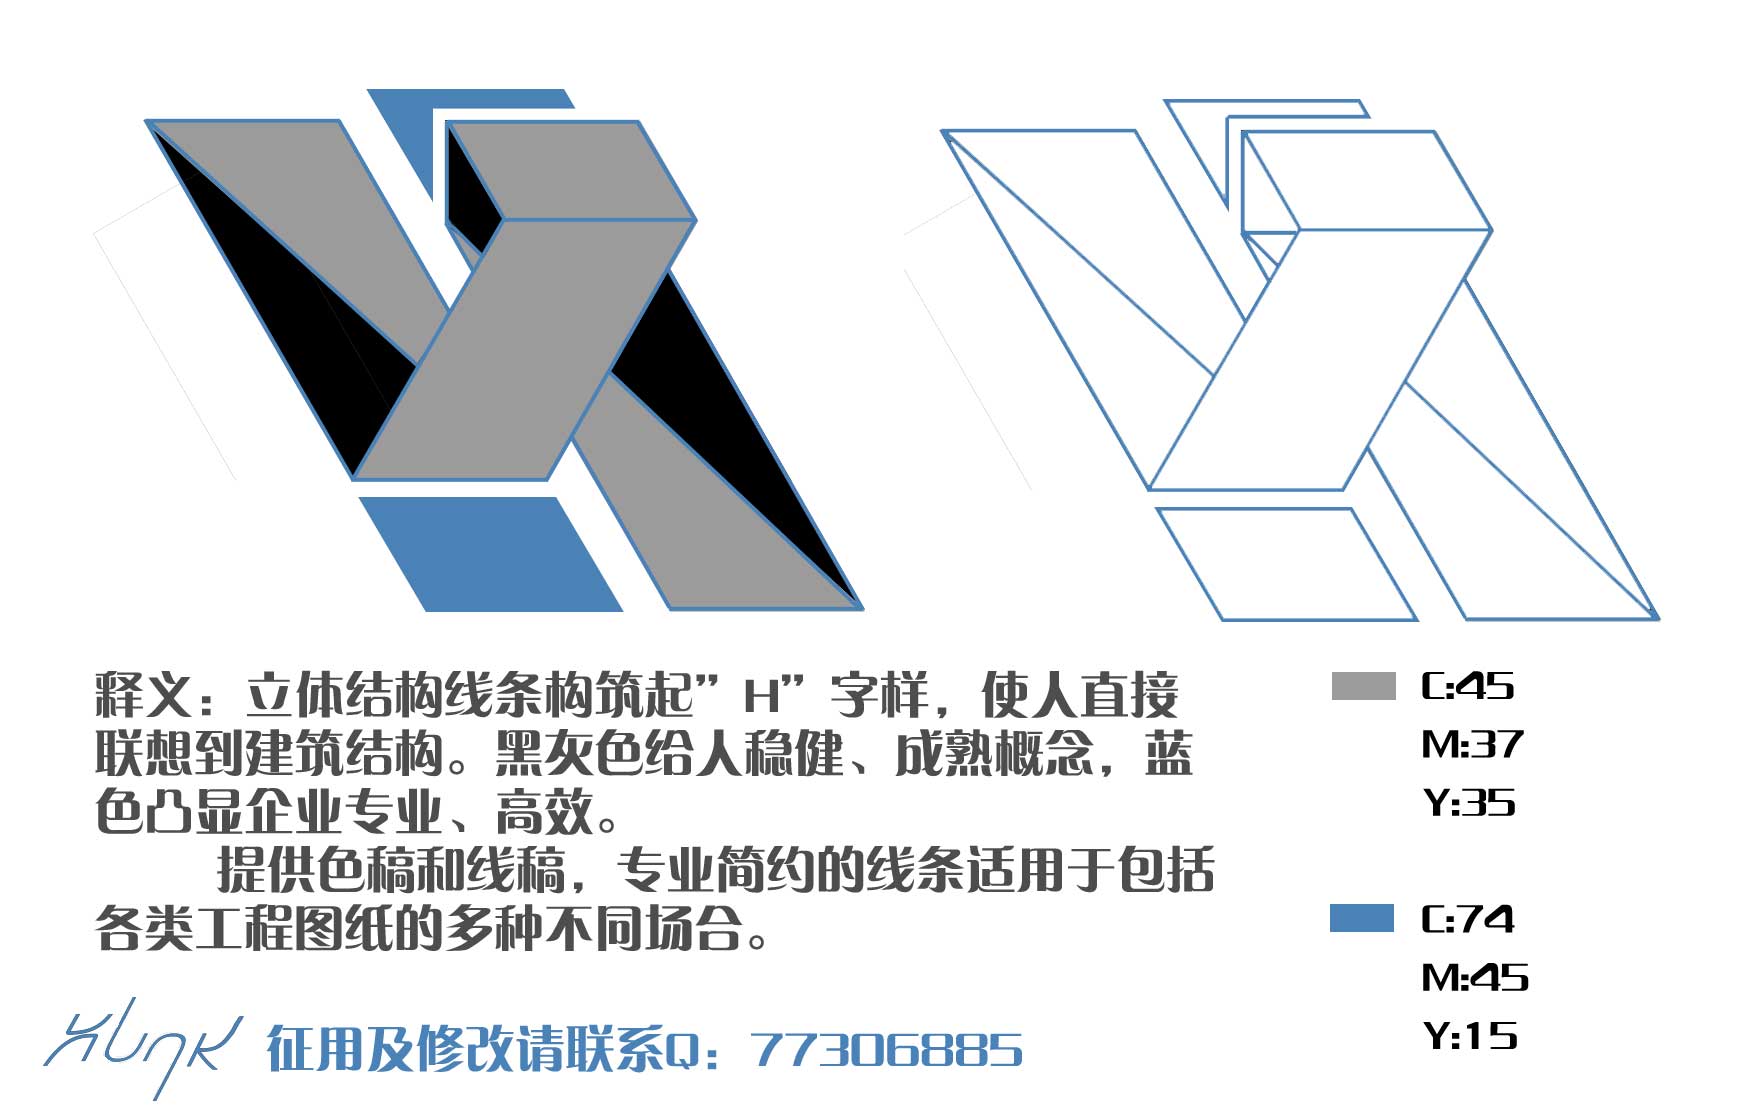 机电工程公司logo设计_180元_K68威客任务